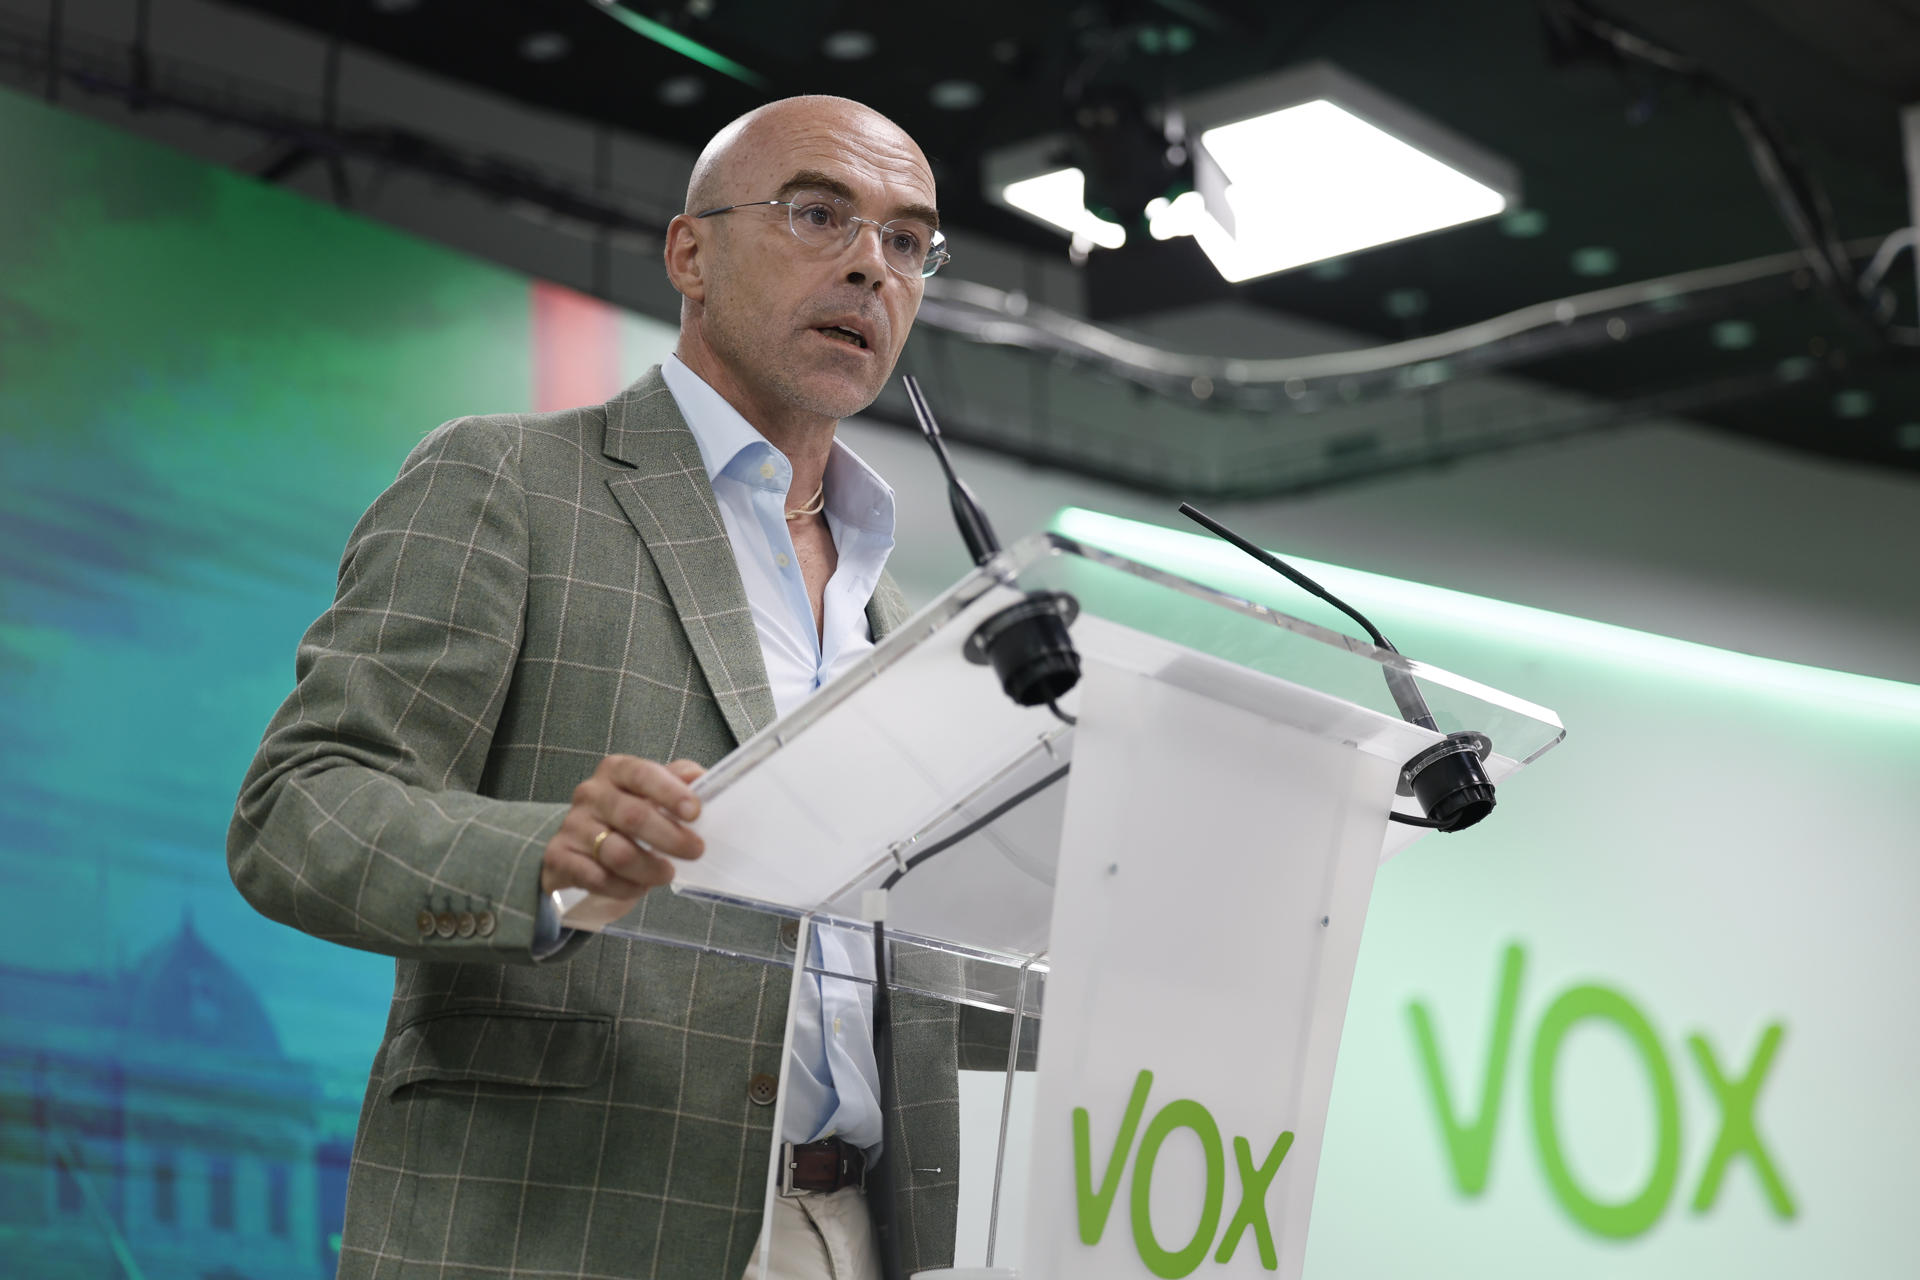 El vicepresidente de Acción política de Vox, Jorge Buxadé, da una rueda de prensa en la sede del partido en Madrid este lunes tras haberse reunido con el resto del Comité de Acción Política de su formación. EFE/ Mariscal